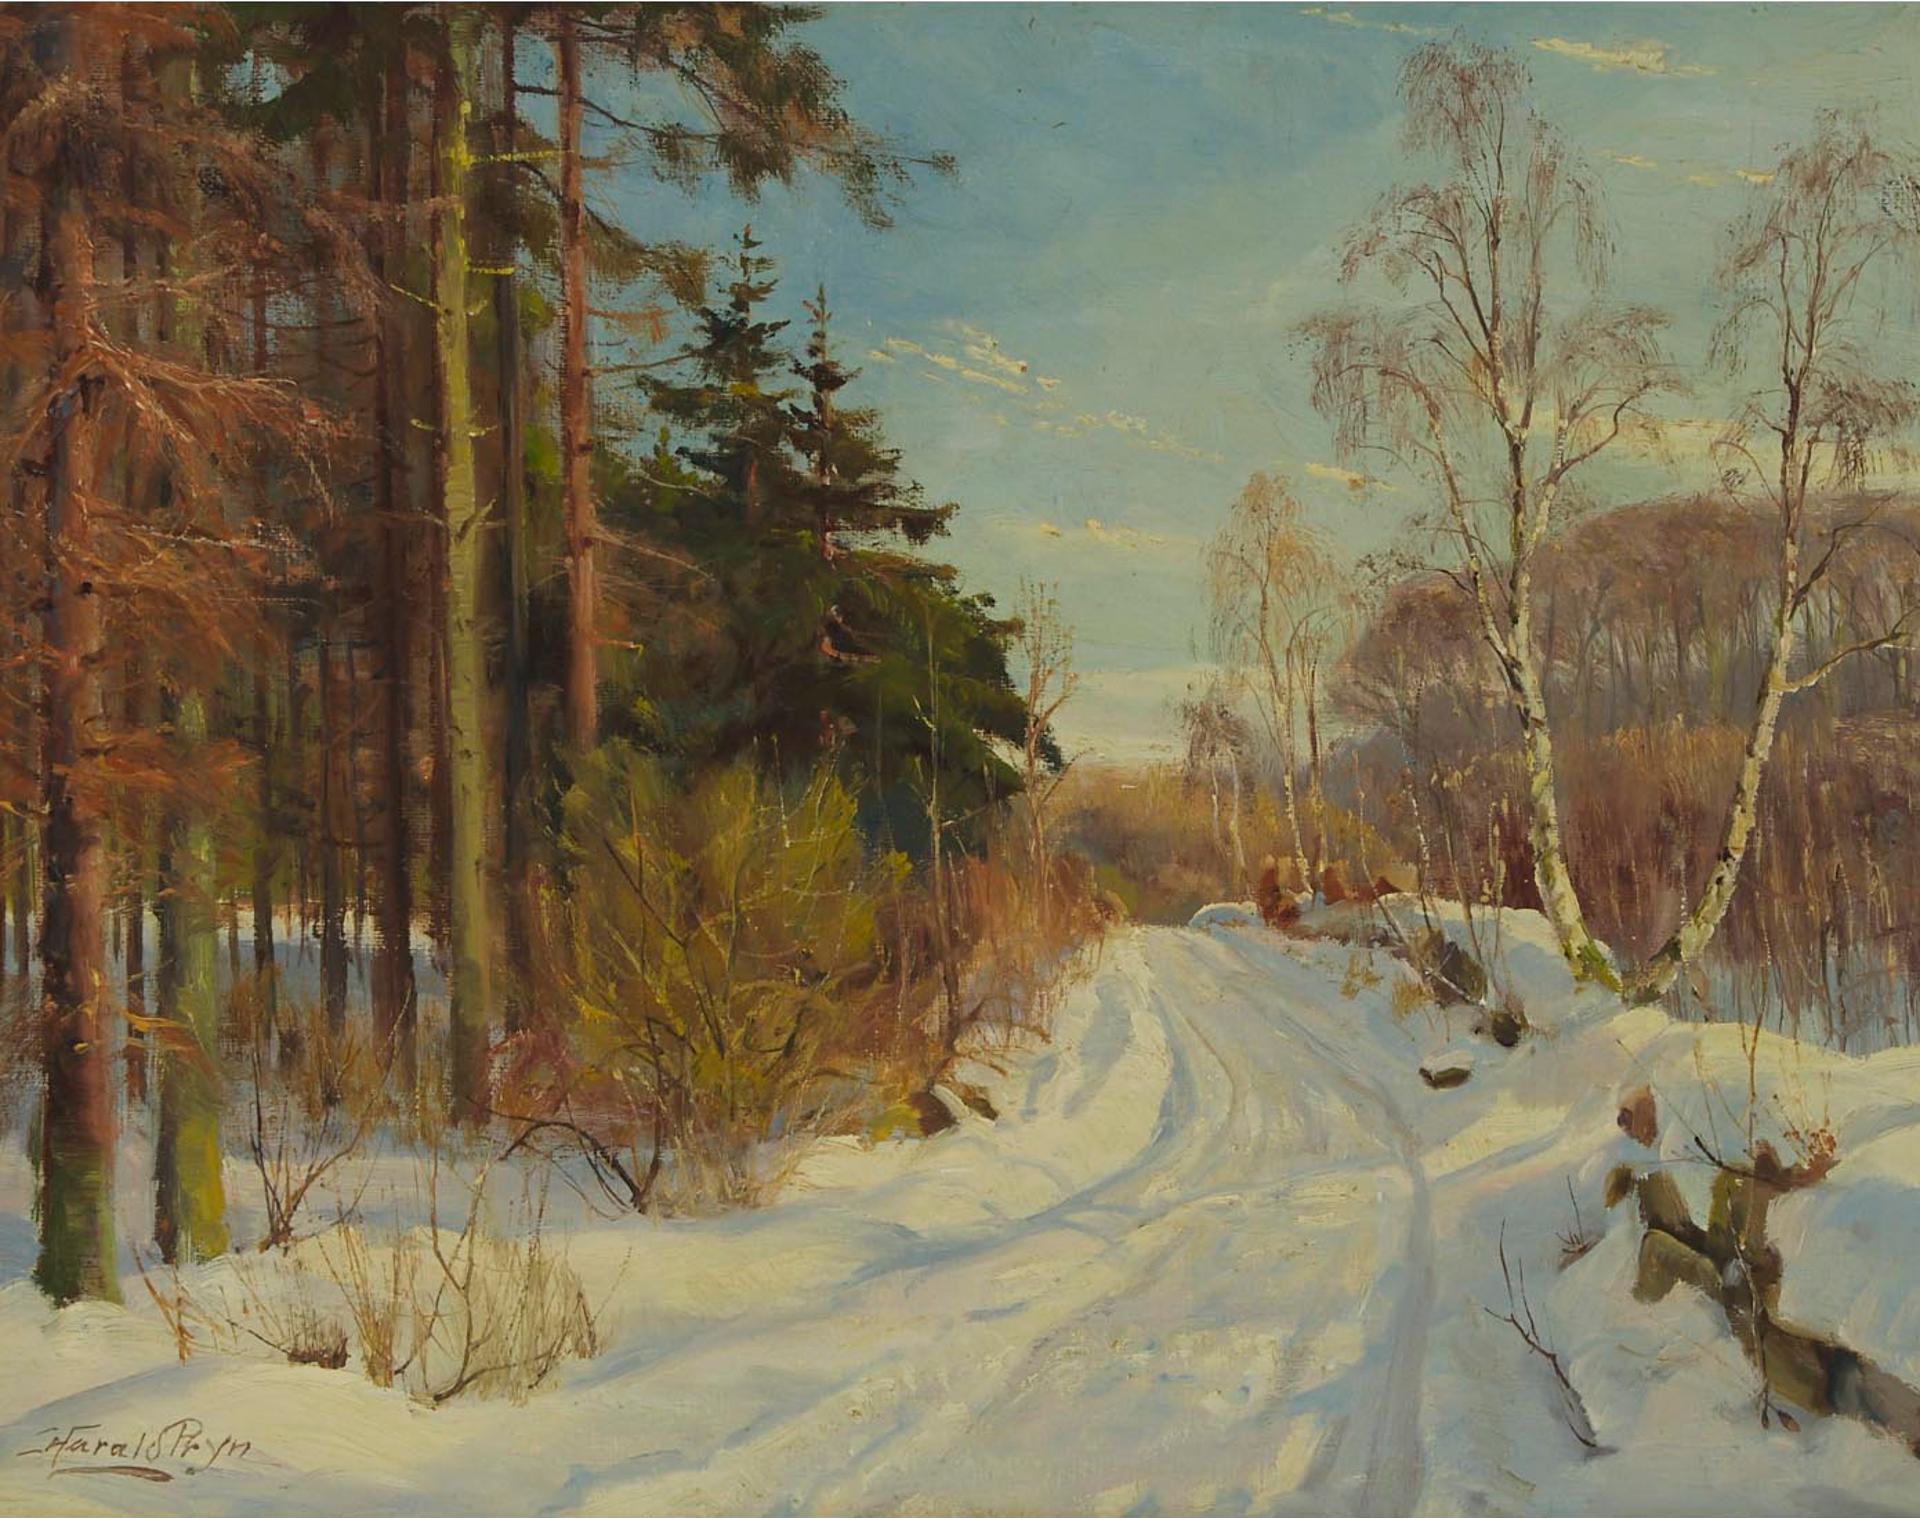 Harald Julius Niels Pryn (1891-1968) - Bóndernes Hegn (Winter Road)